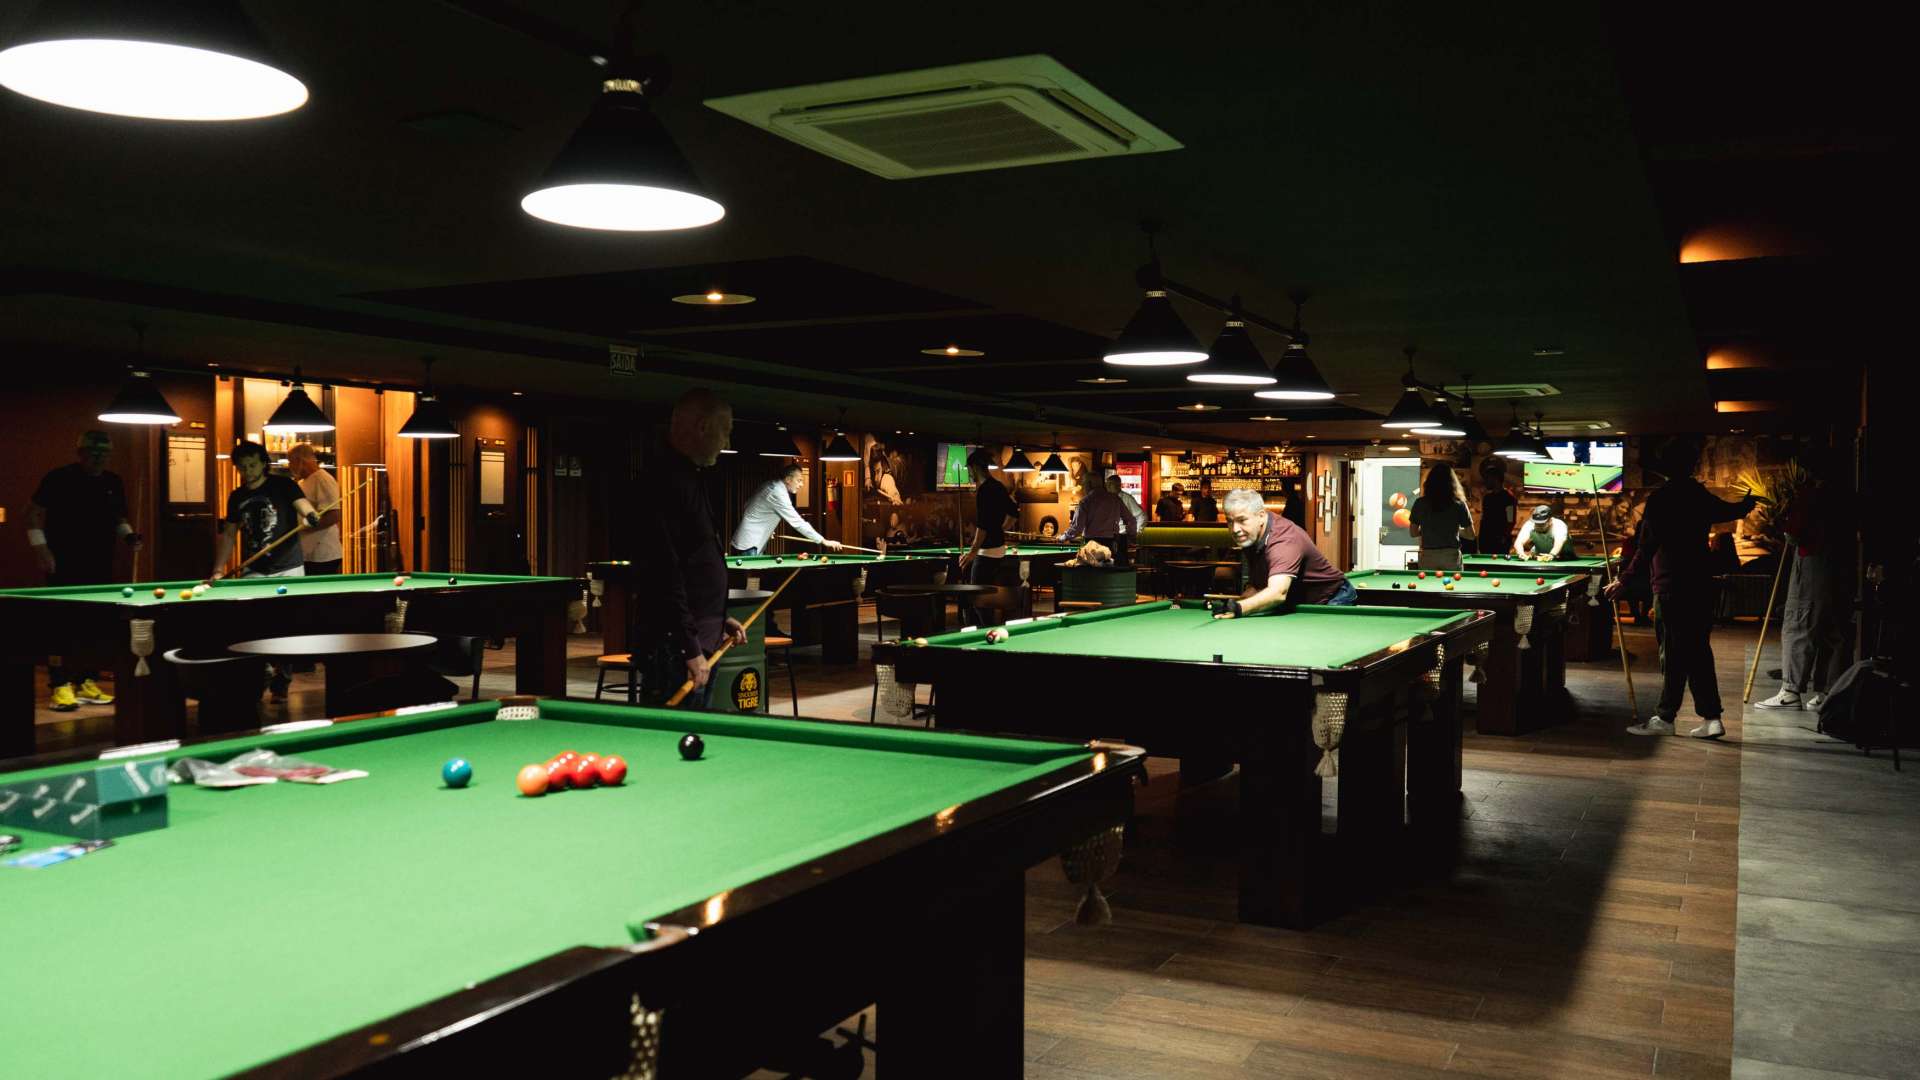 Pub Snooker Tigre abre em um dos pontos mais icônicos de Porto Alegre